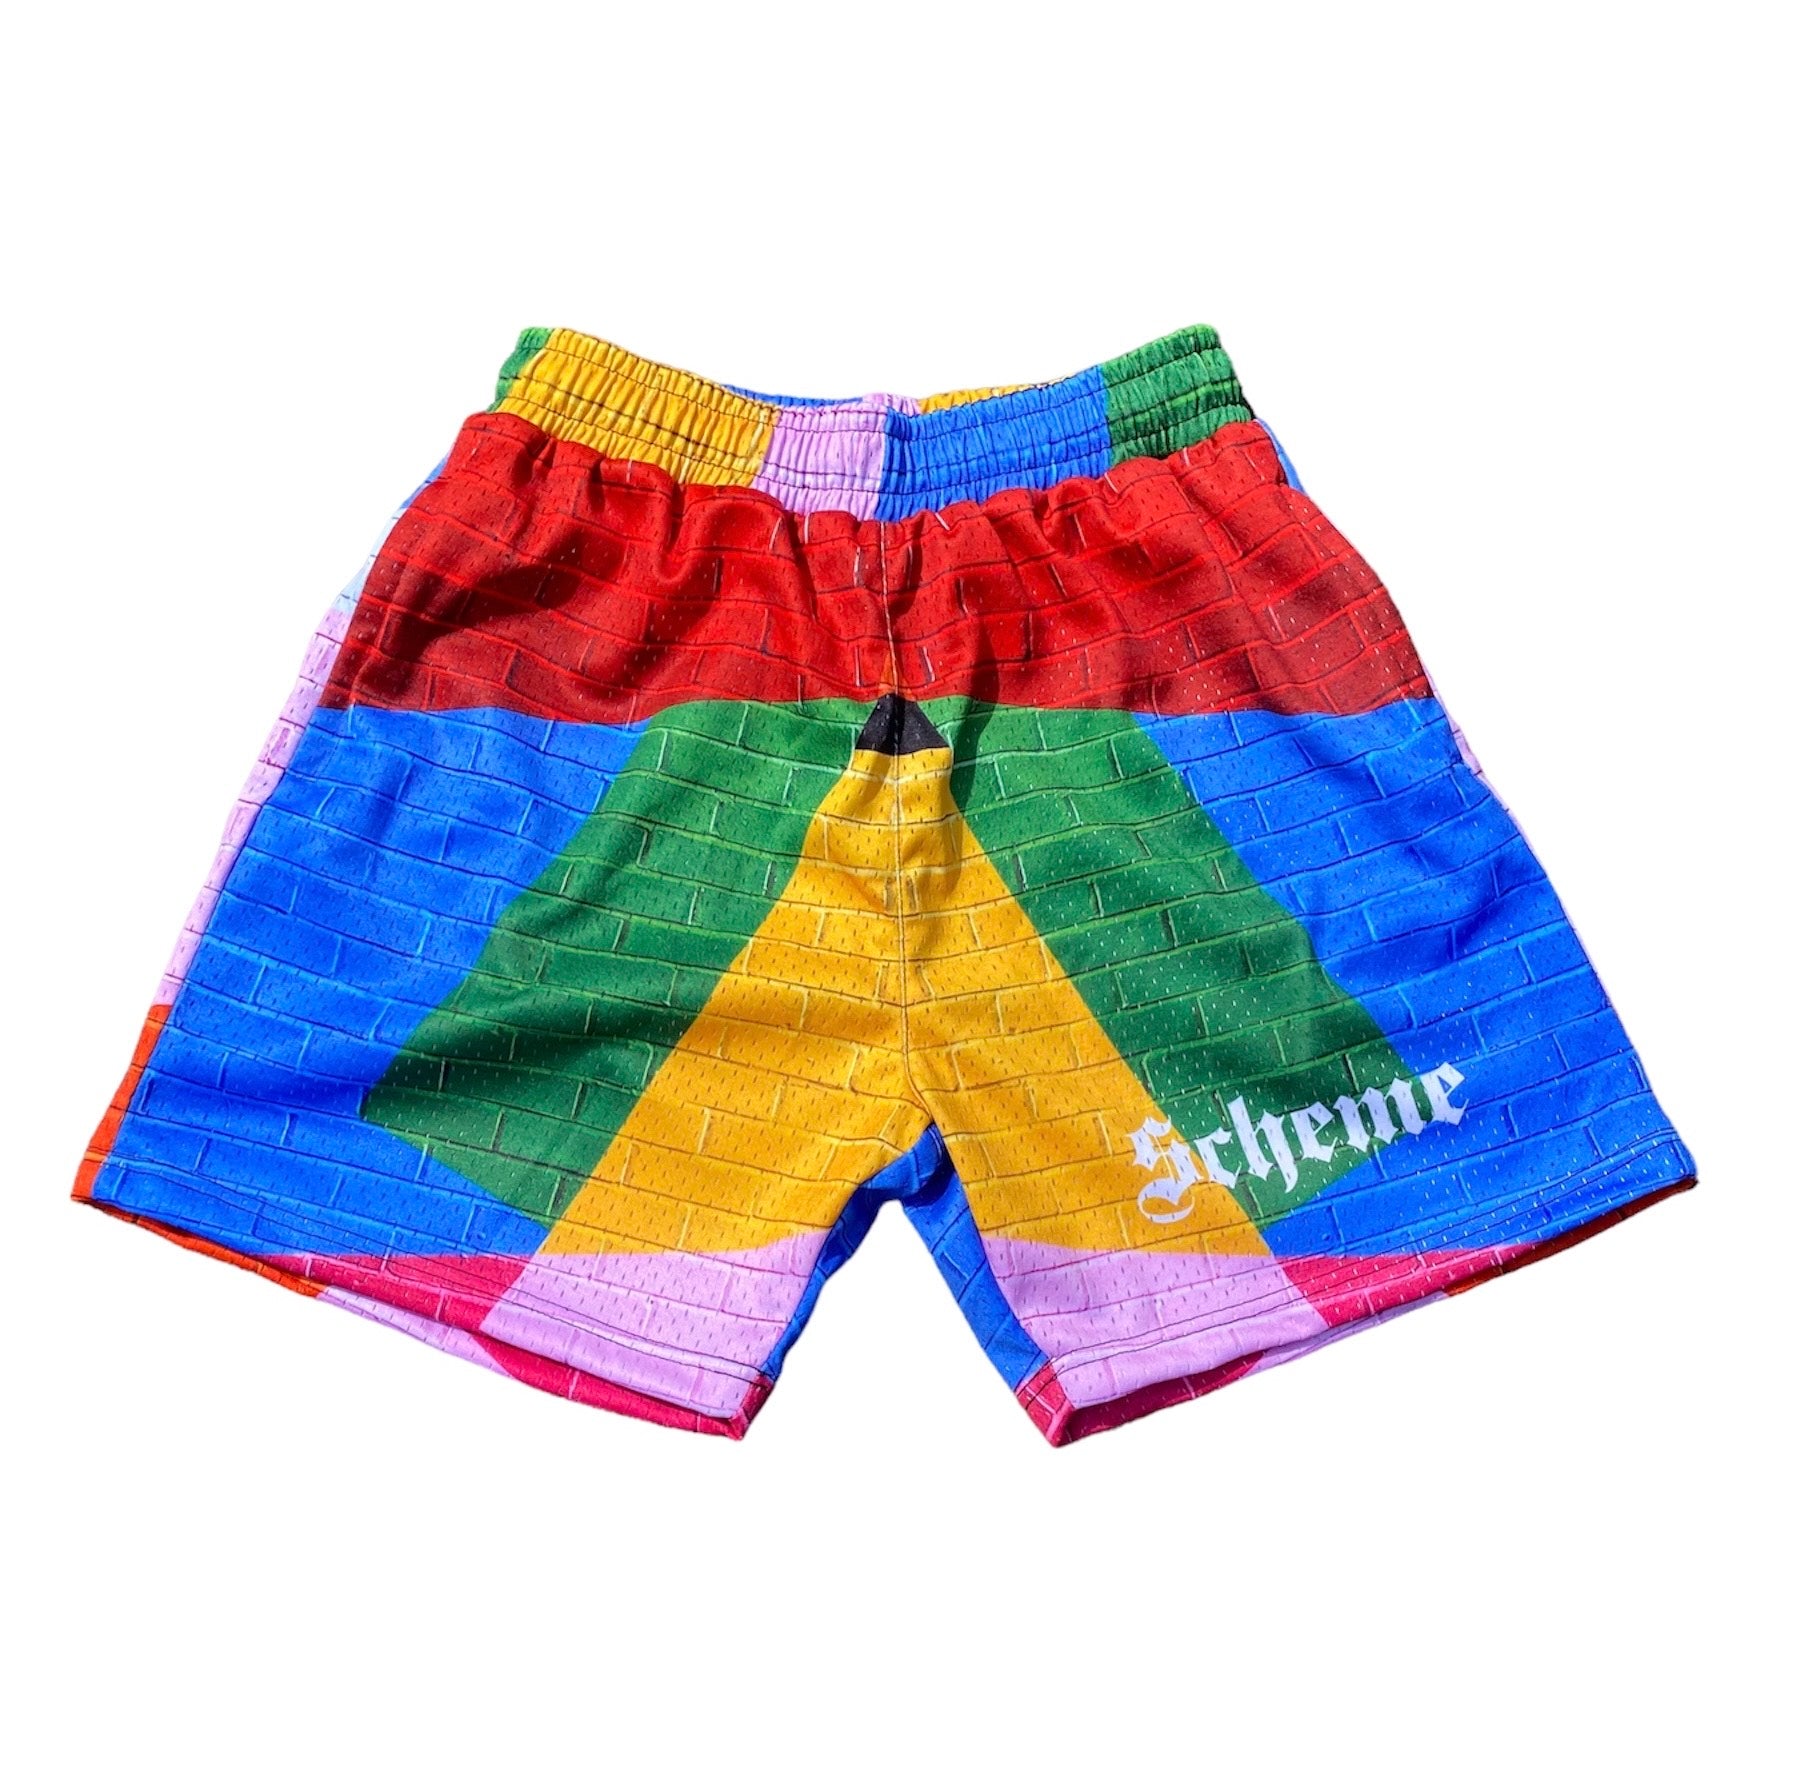 "Scheme" Bricks Mesh Shorts - Scheme Wear